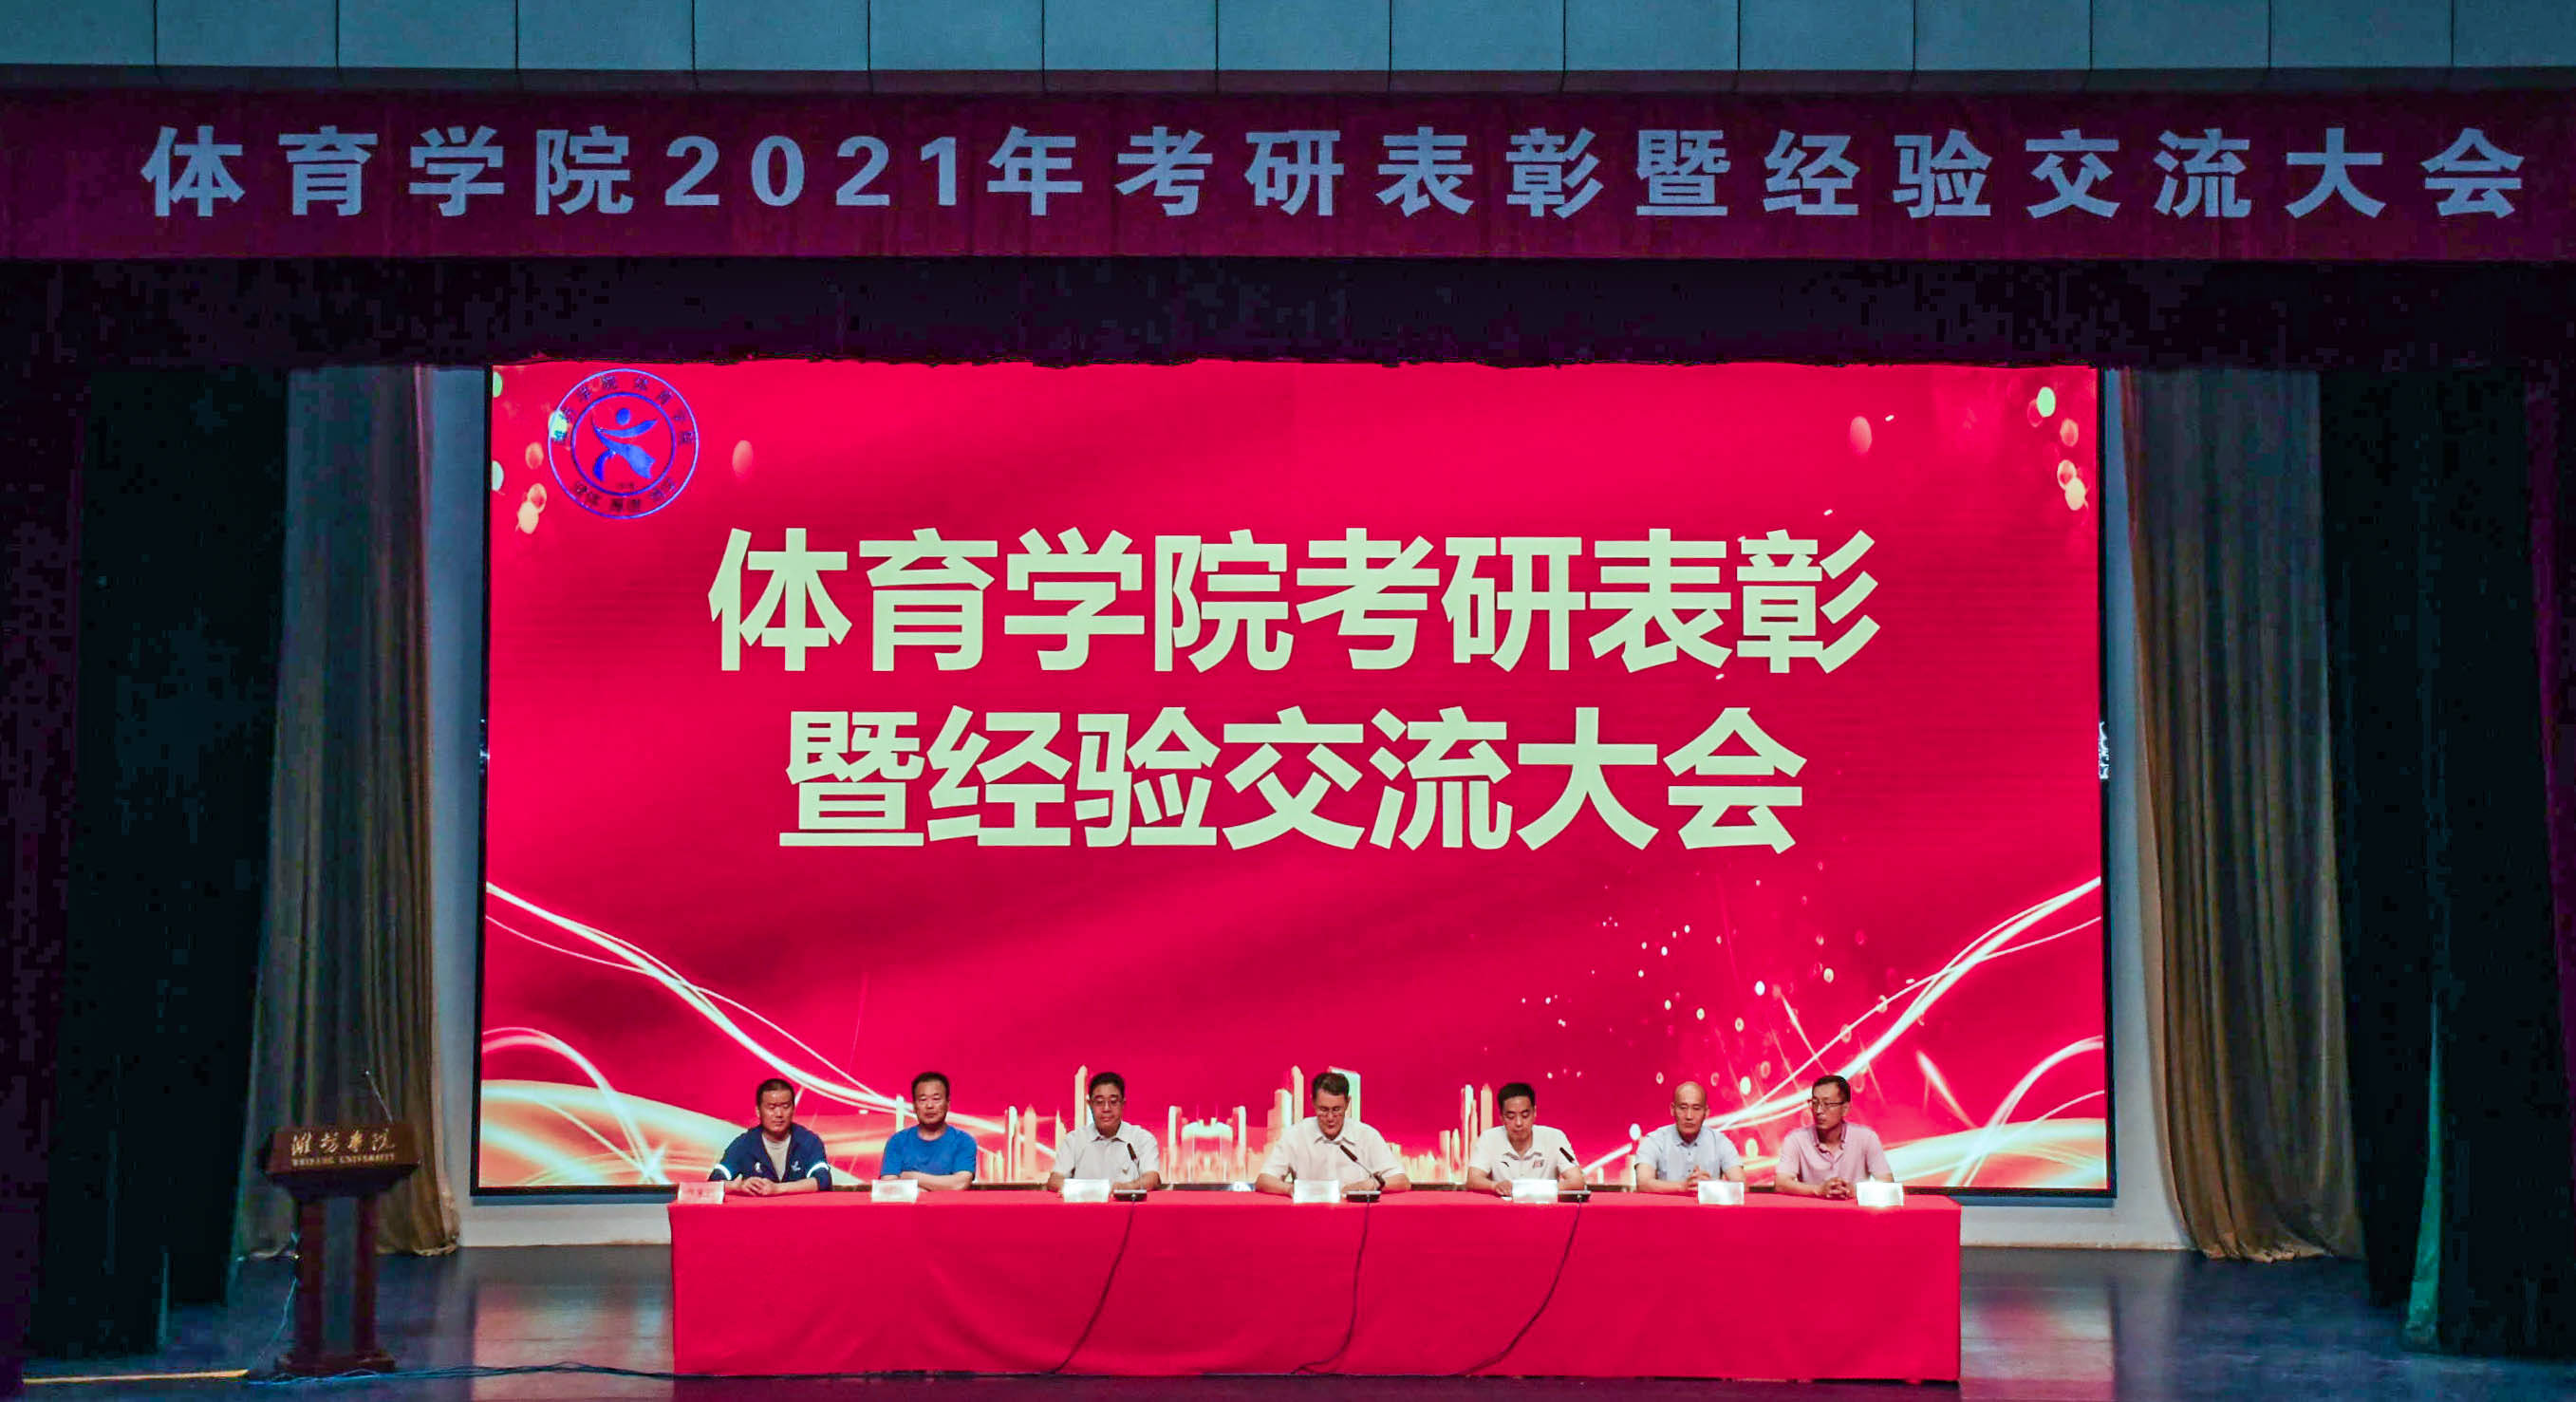 潍坊学院体育学院举办2021年考研表彰暨经验交流大会